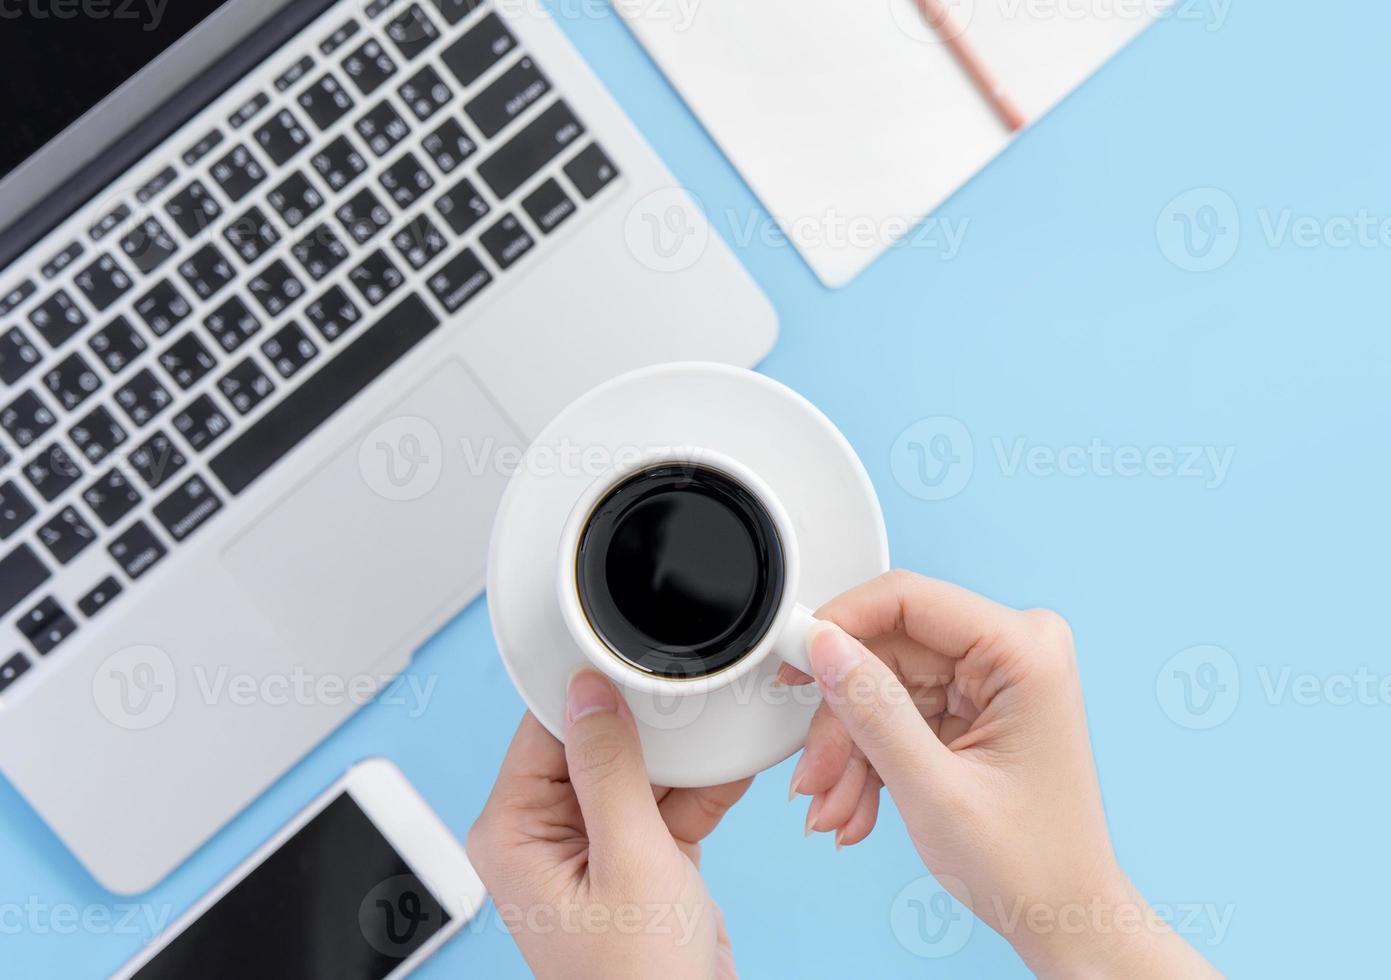 concetto di business, relax nell'orario di lavoro, bere un caffè facendo una pausa su un tavolo da ufficio azzurro pulito, spazio per la copia, disposizione piatta, vista dall'alto, mockup foto